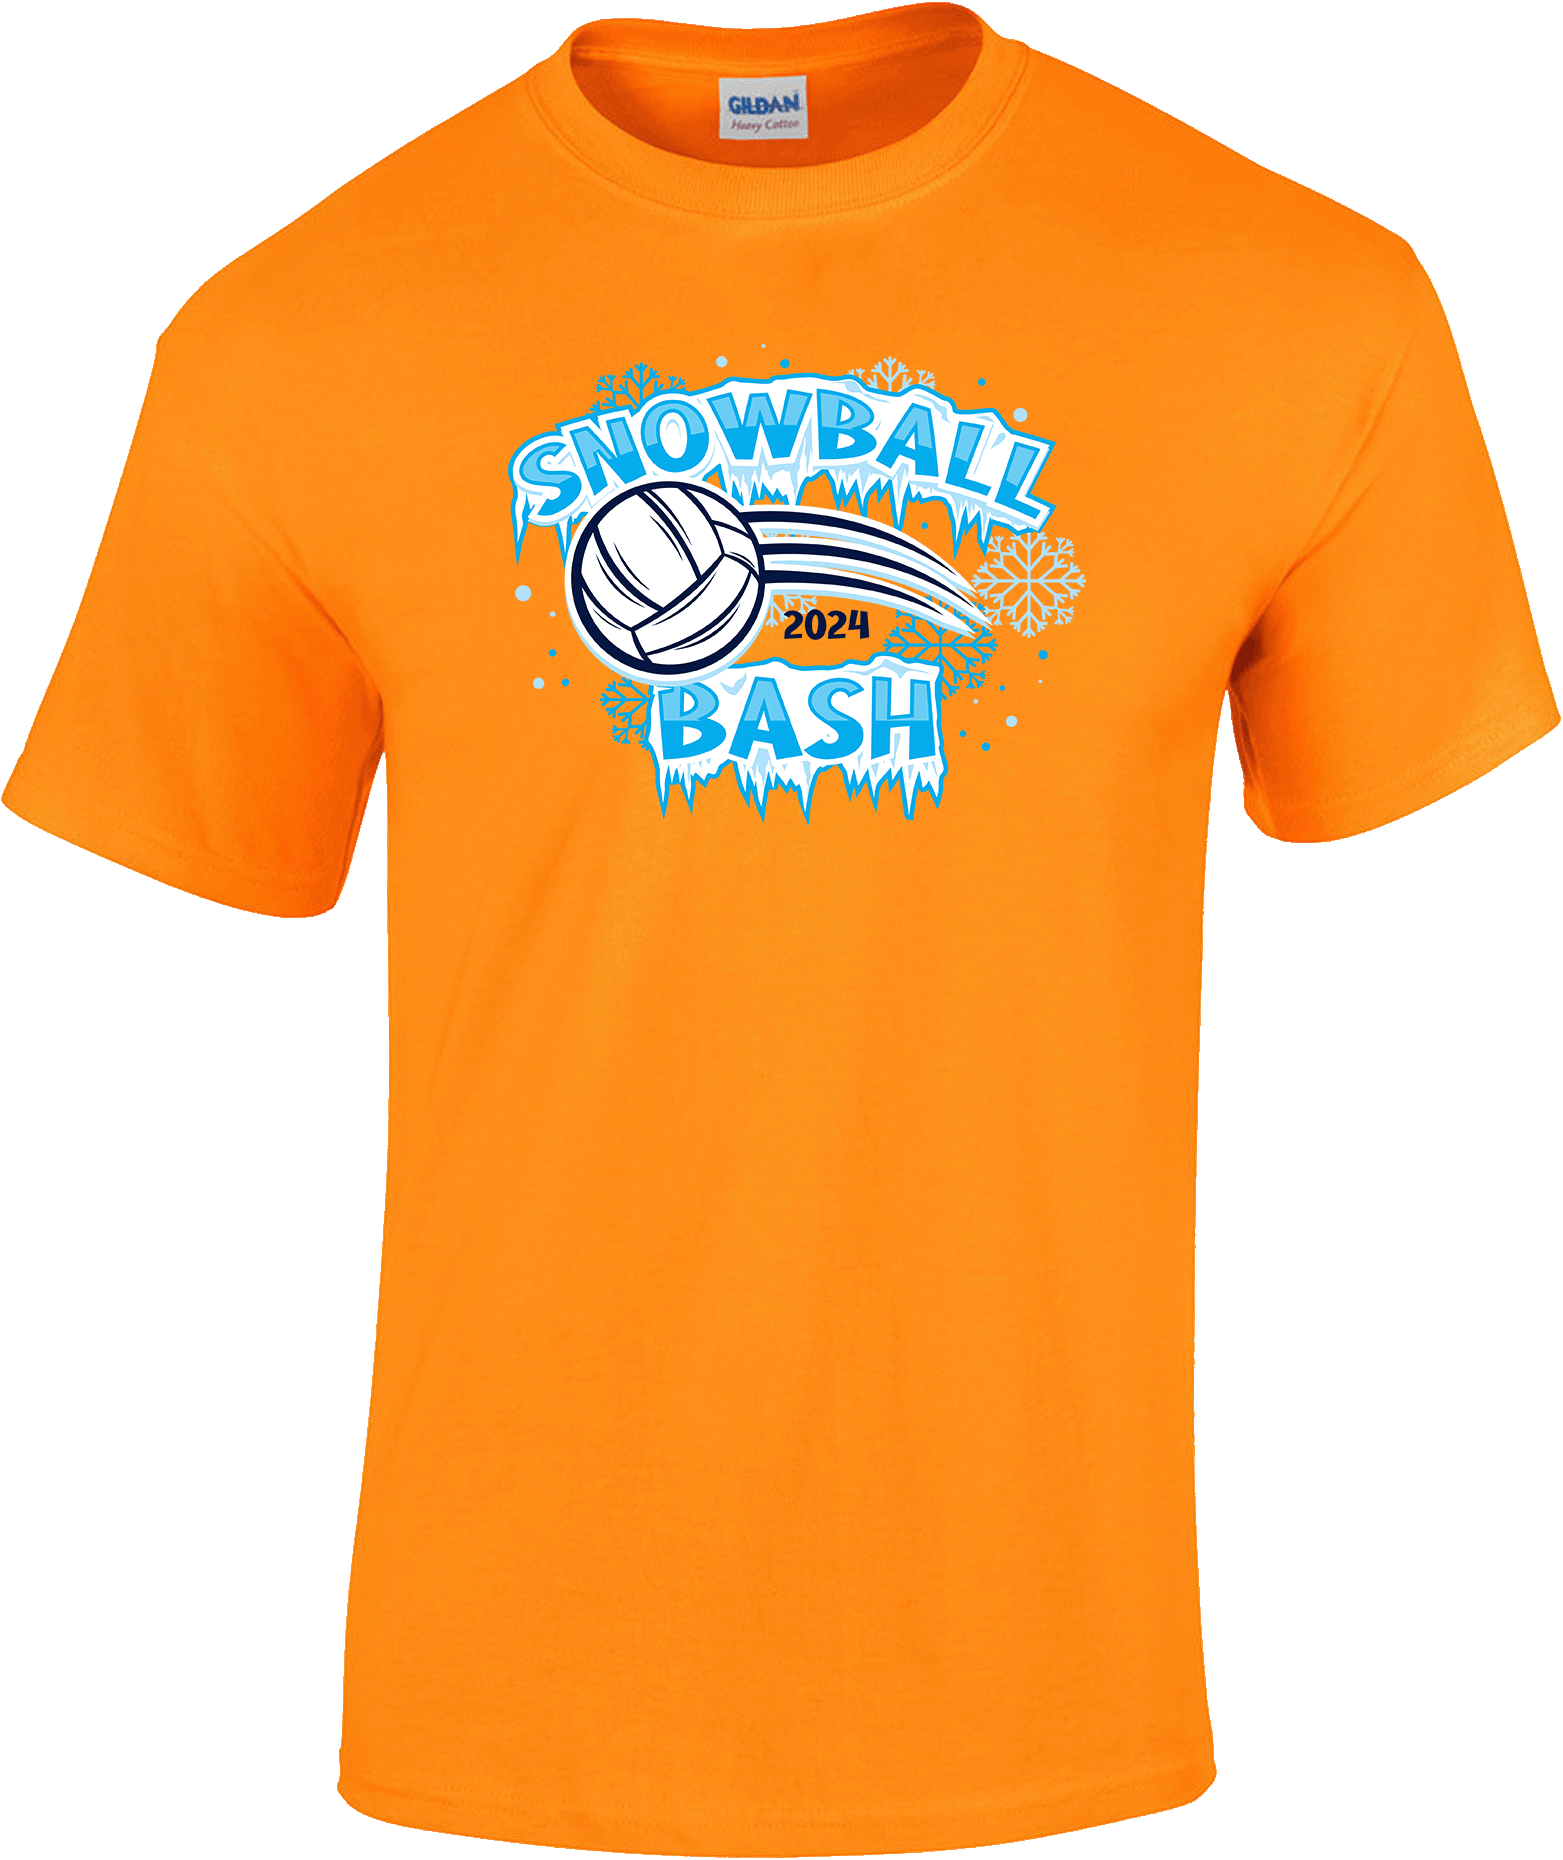 Short Sleeves - 2024 Snowball Bash